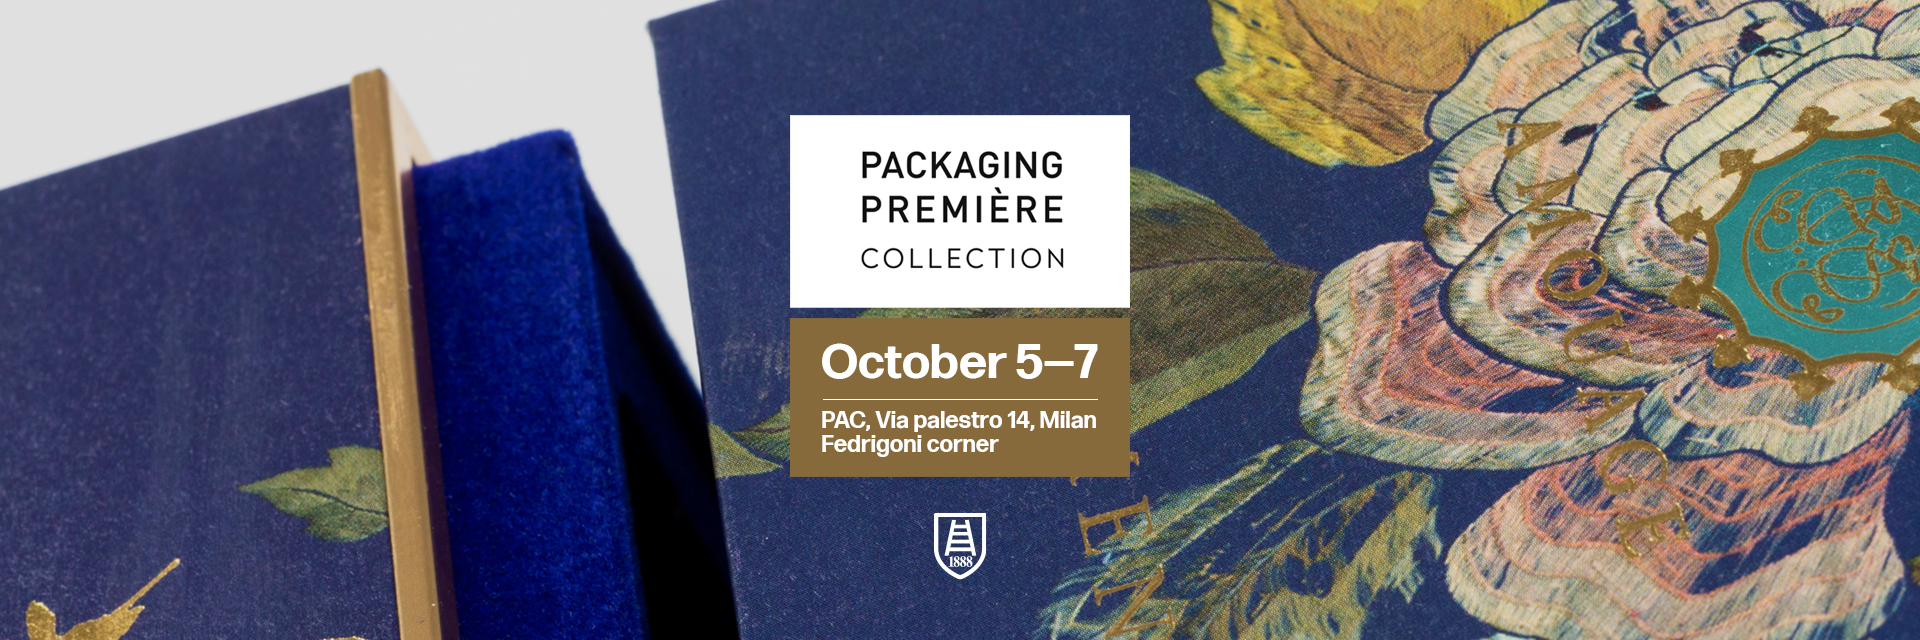 Besuchen Sie uns auf der Packaging Premiere Collection<!--Visit us at Packaging Premiere Collection-->